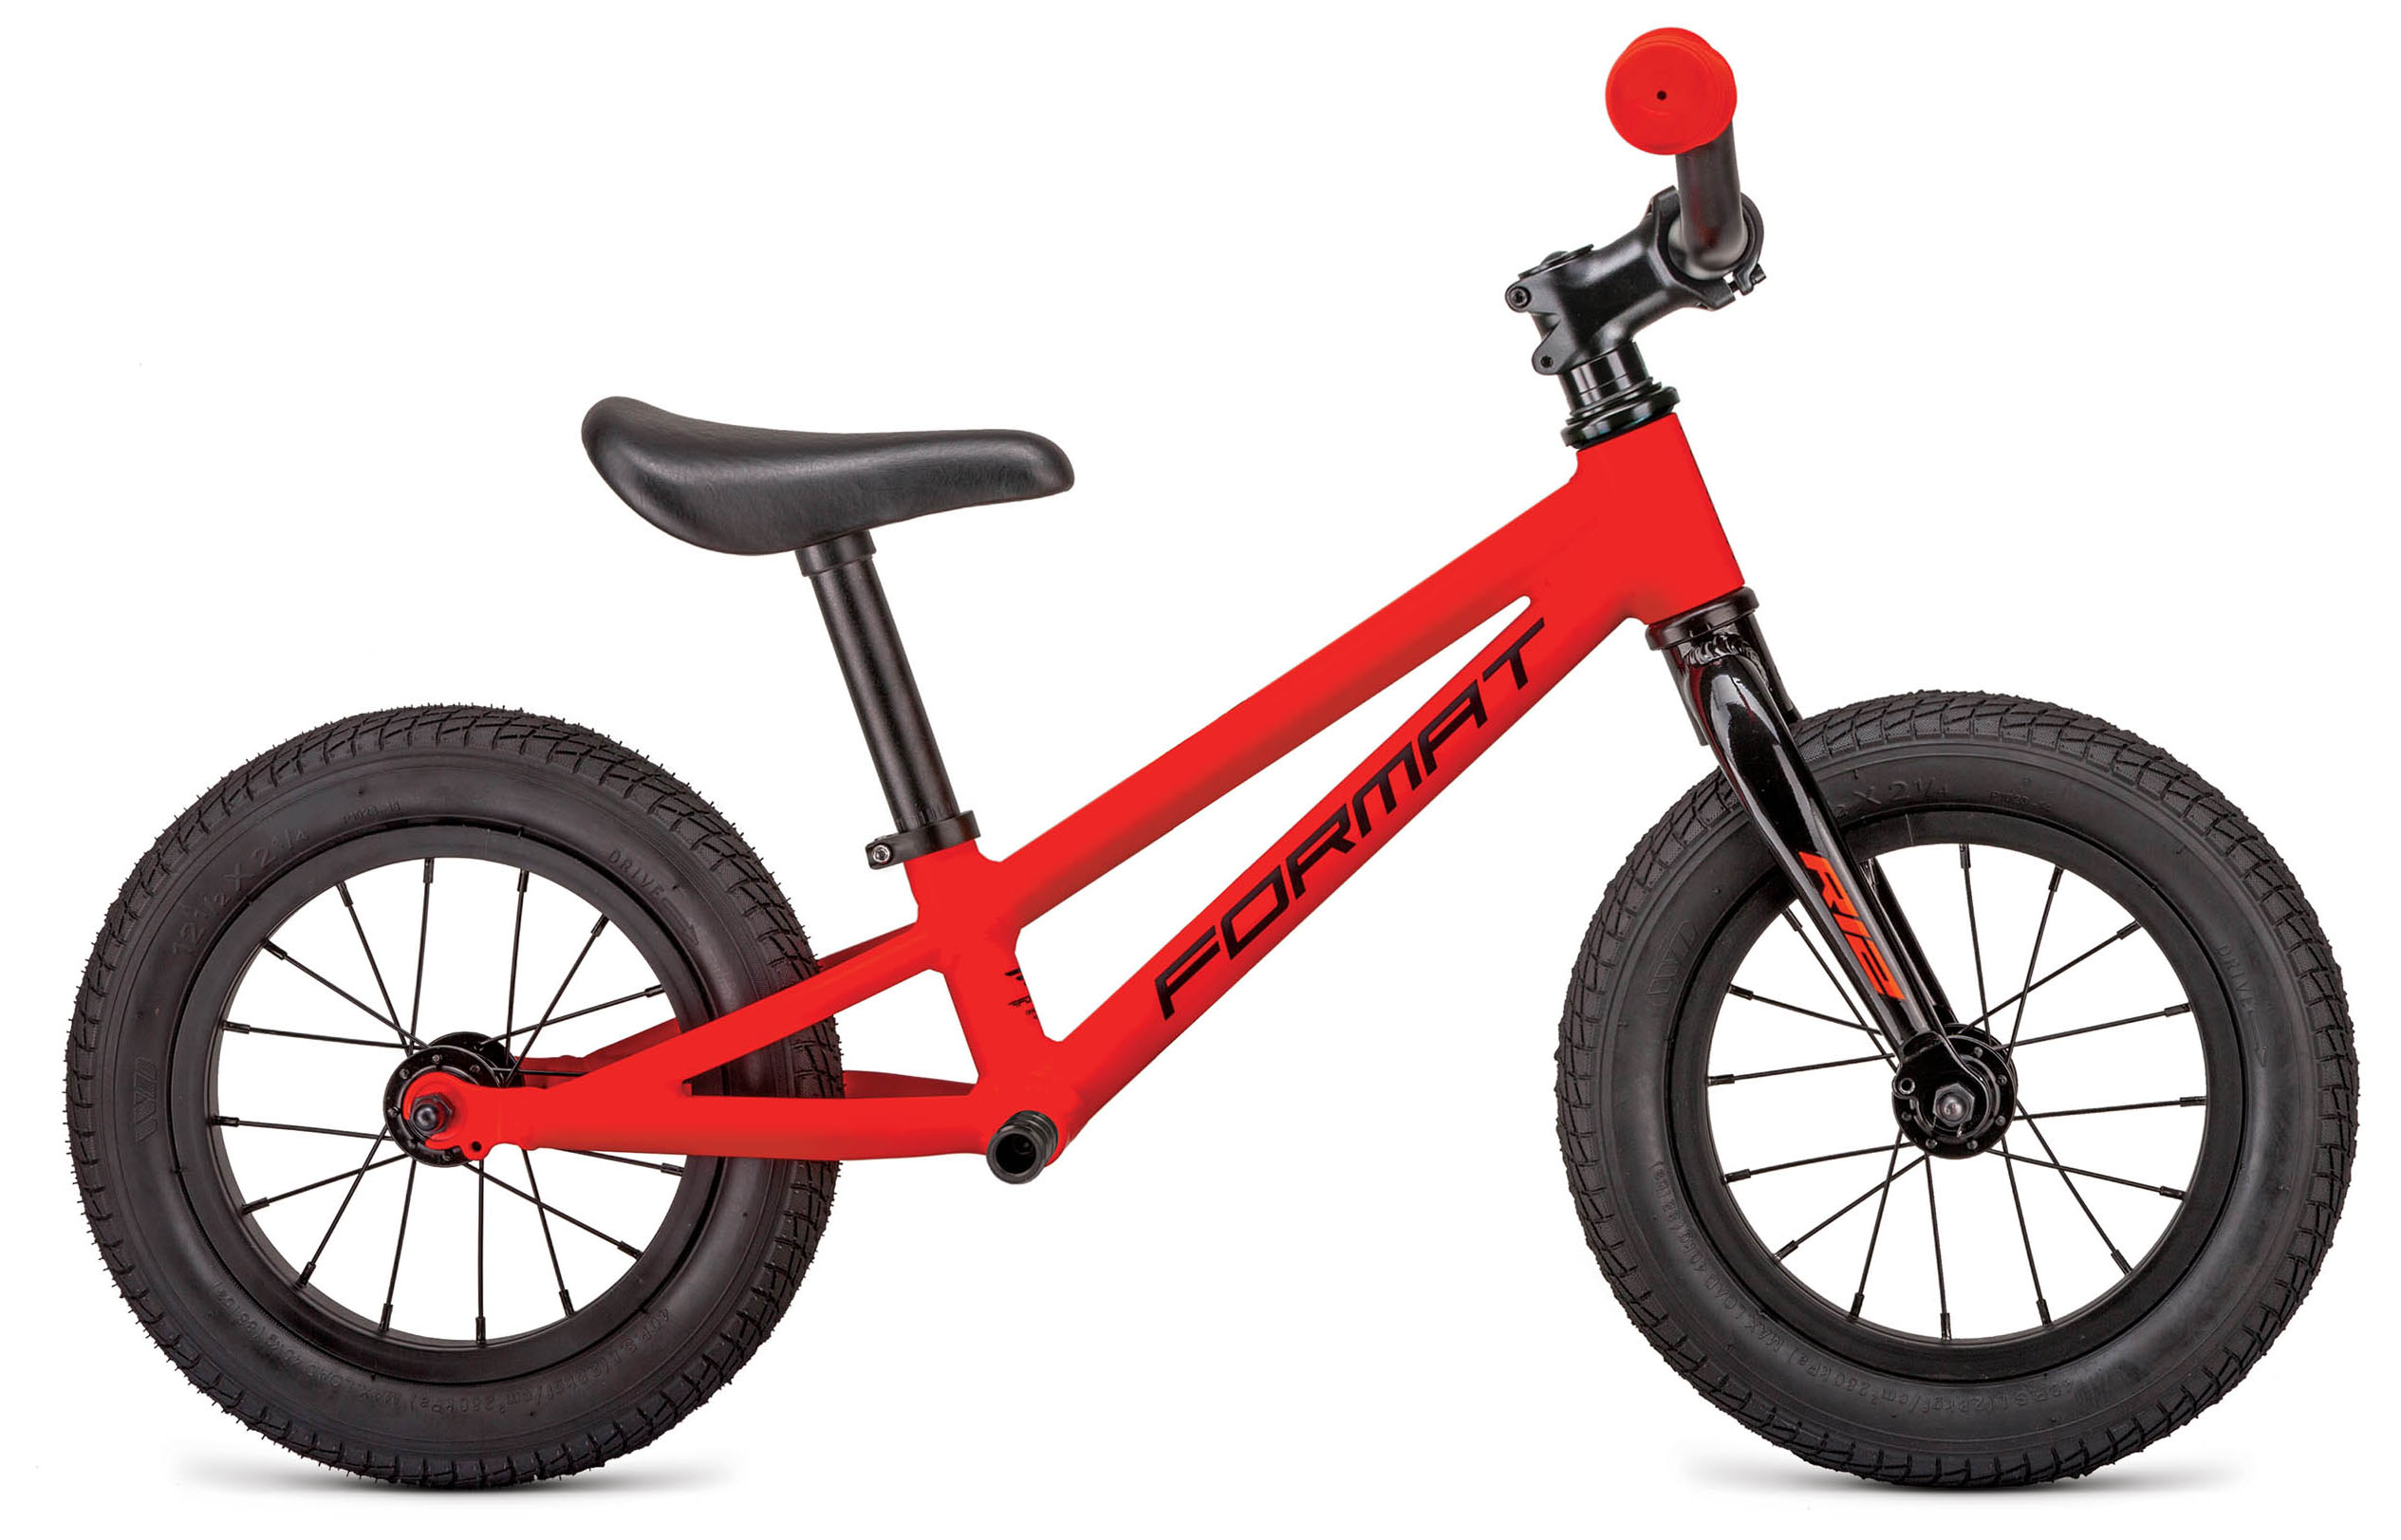  Отзывы о Детском велосипеде Format Runbike 12 2019